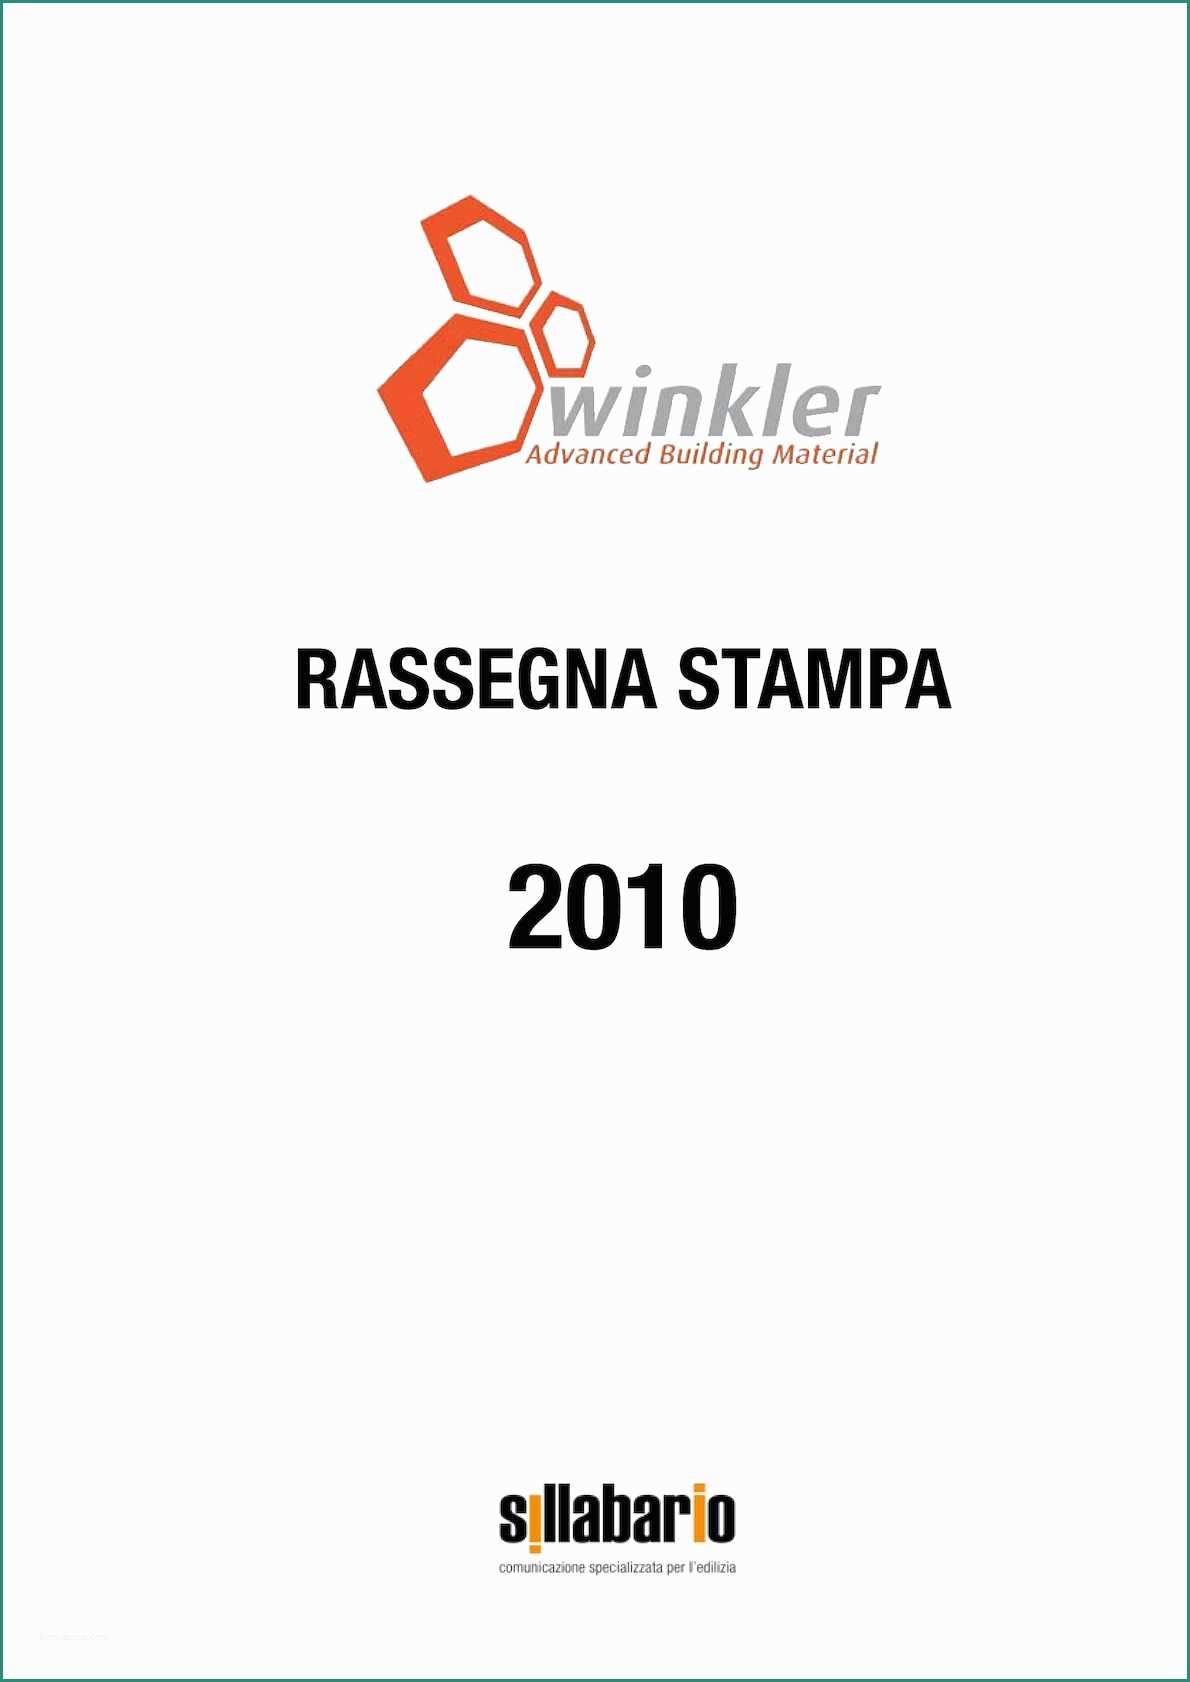 Ripristino Frontalini Balconi Prezzi E Calaméo Winkler Rassegna Stampa 2010